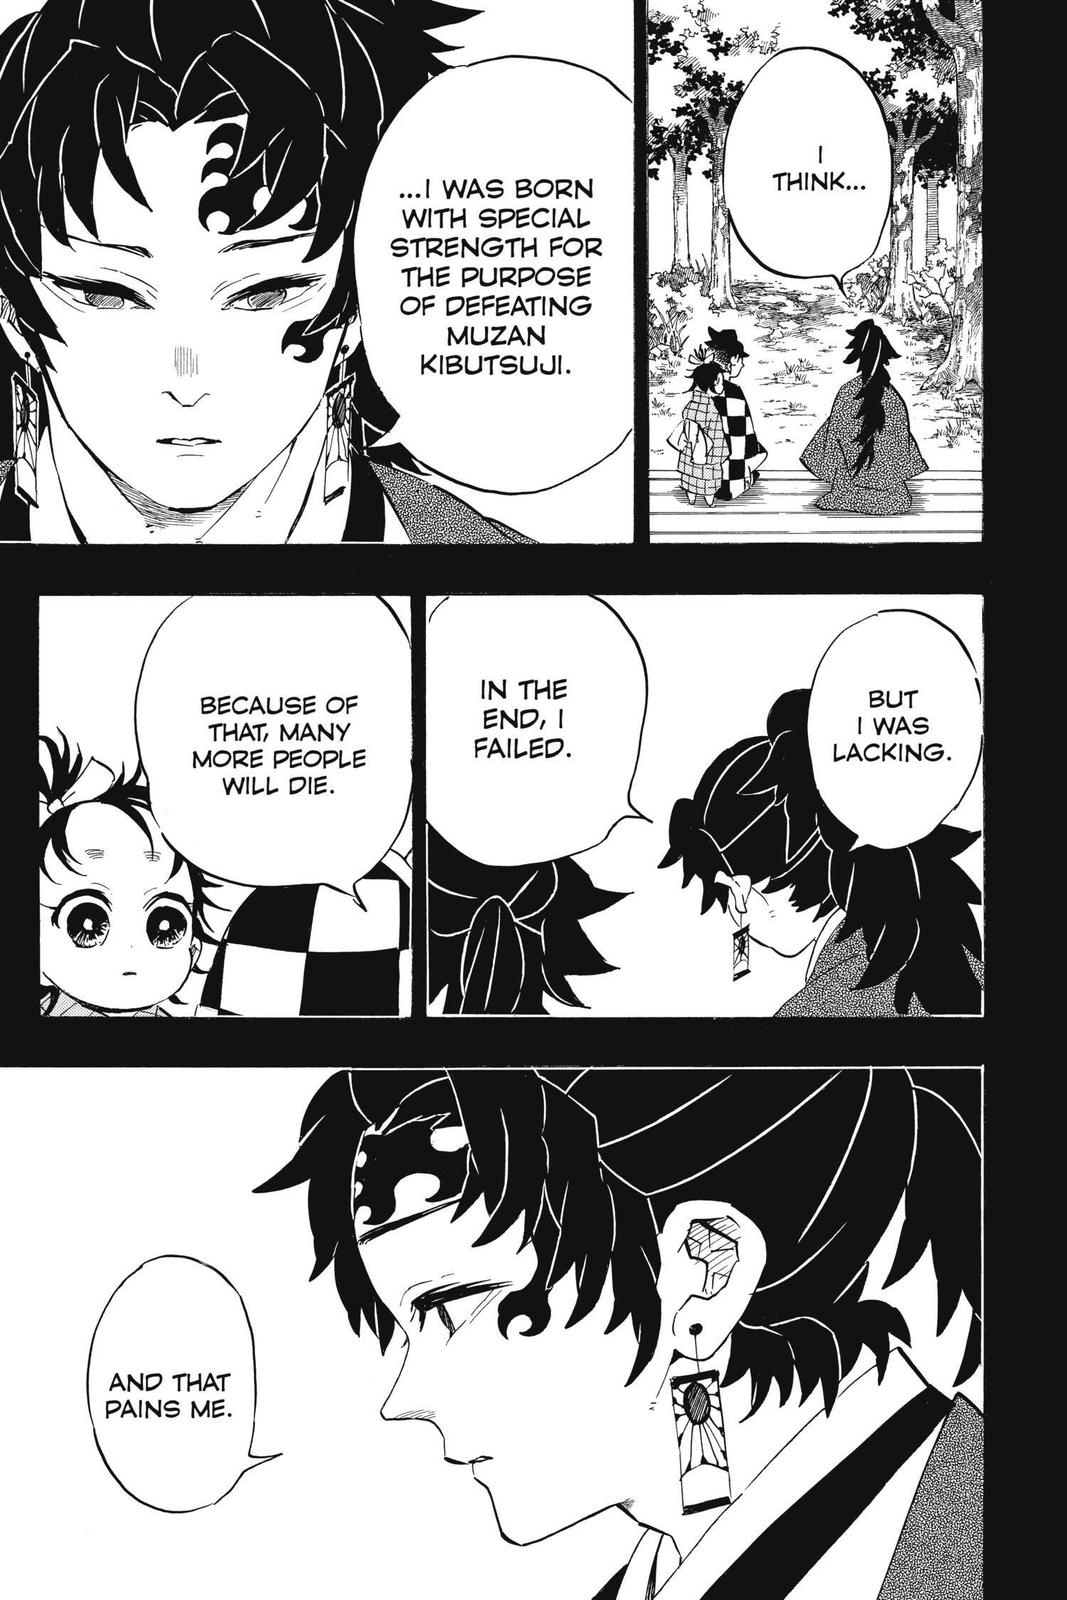 Demon Slayer Manga Manga Chapter - 187 - image 12